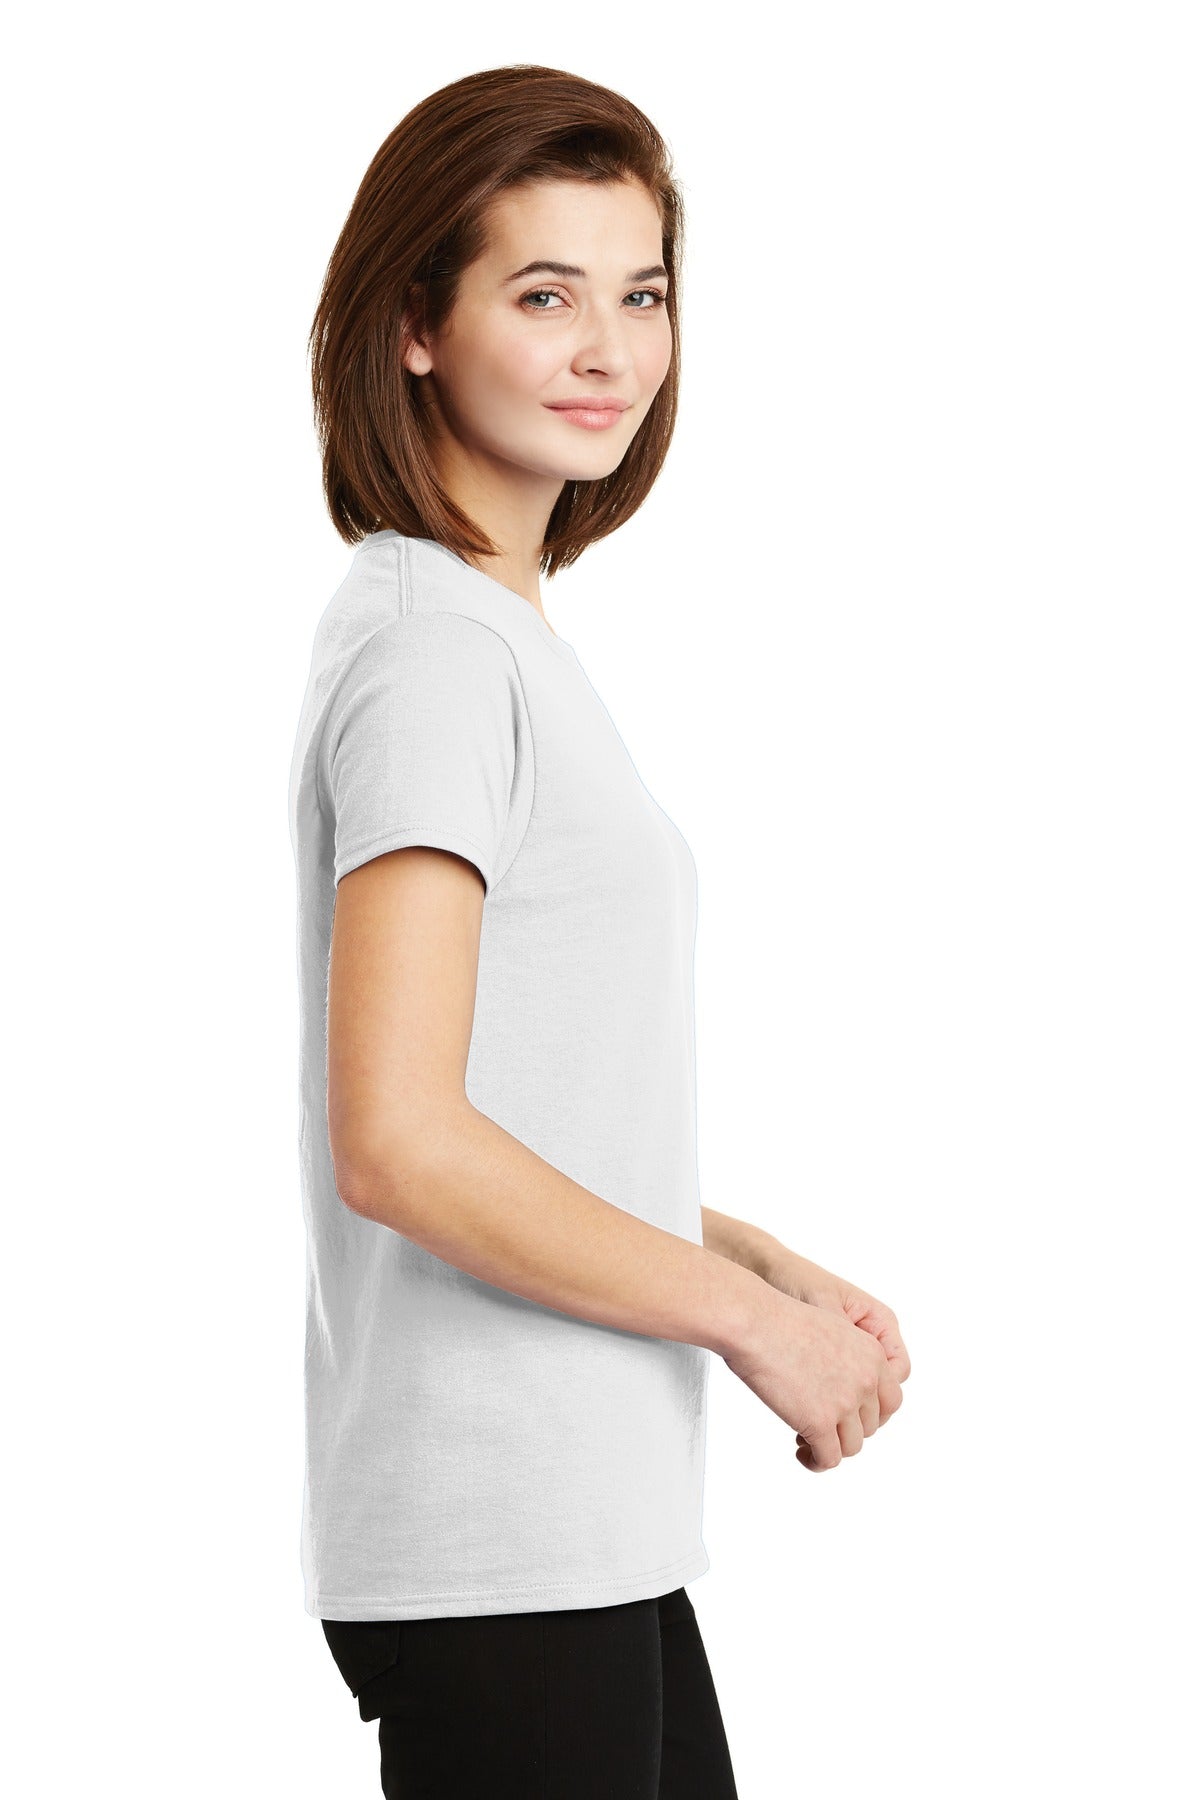 Gildan® - Ladies Ultra Cotton® 100% US Cotton T-Shirt. 2000L [White] - DFW Impression